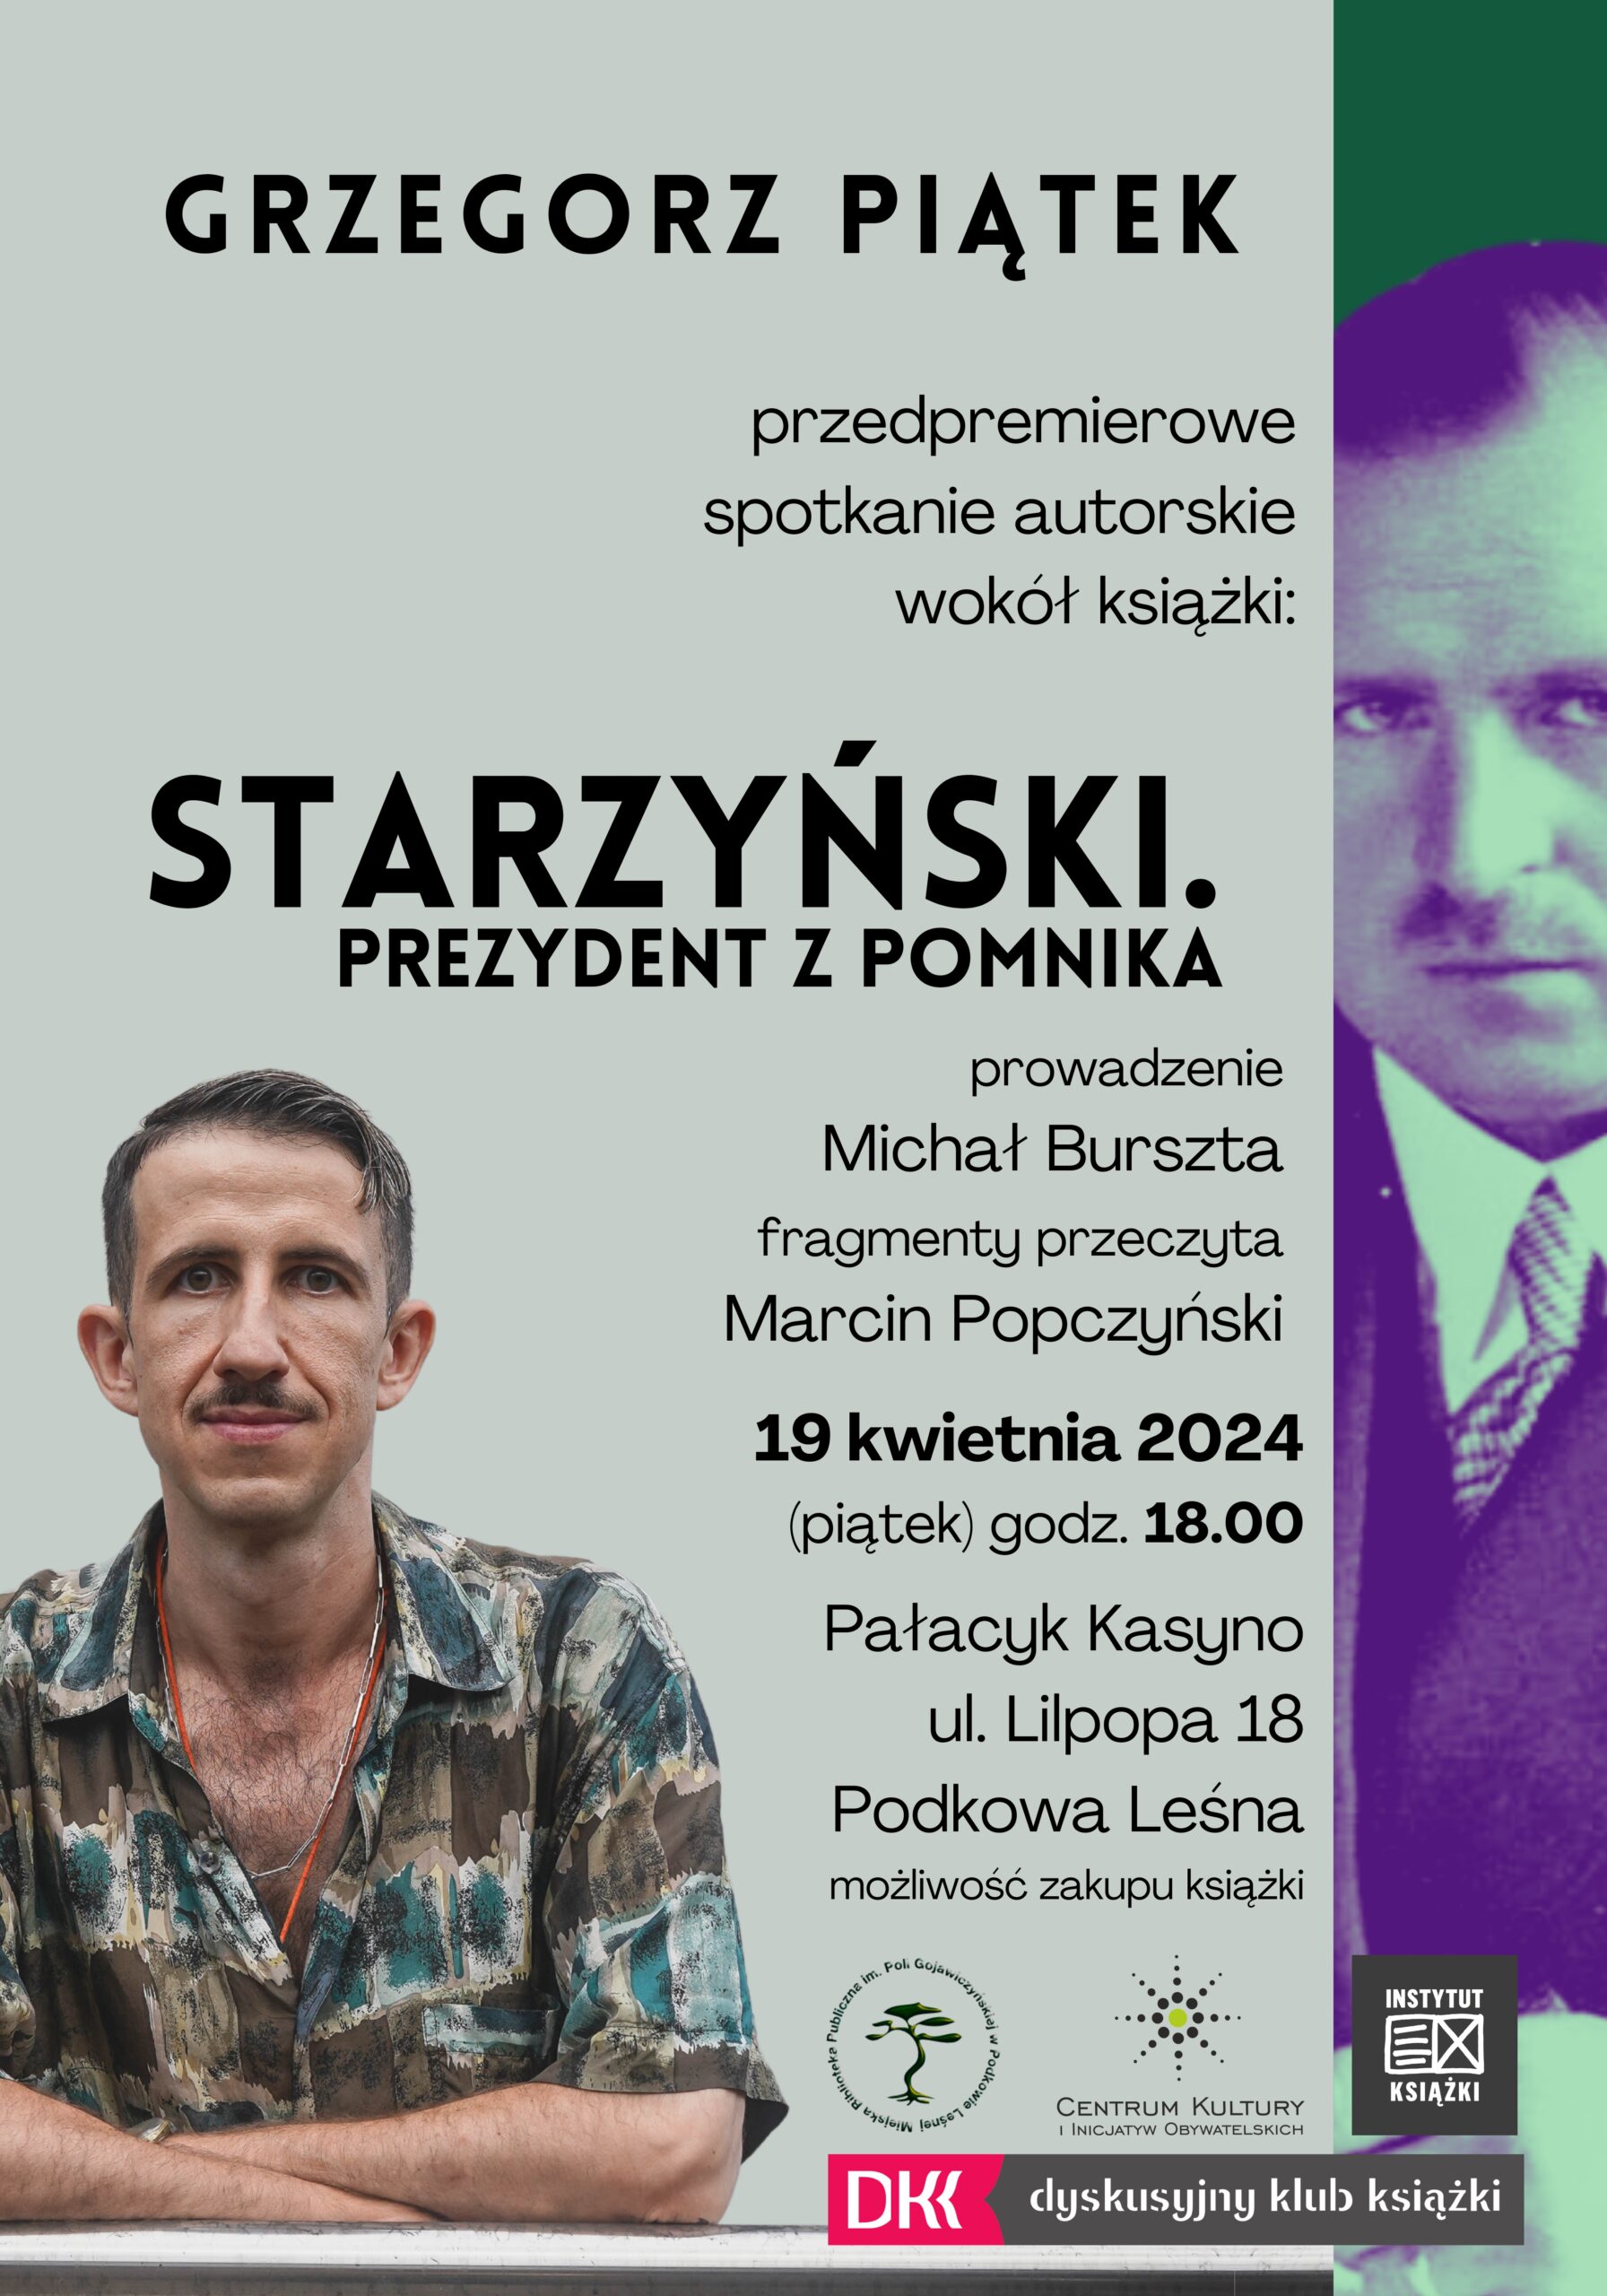 You are currently viewing Grzegorz Piątek – spotkanie autorskie: Starzyński. Prezydent z pomnika